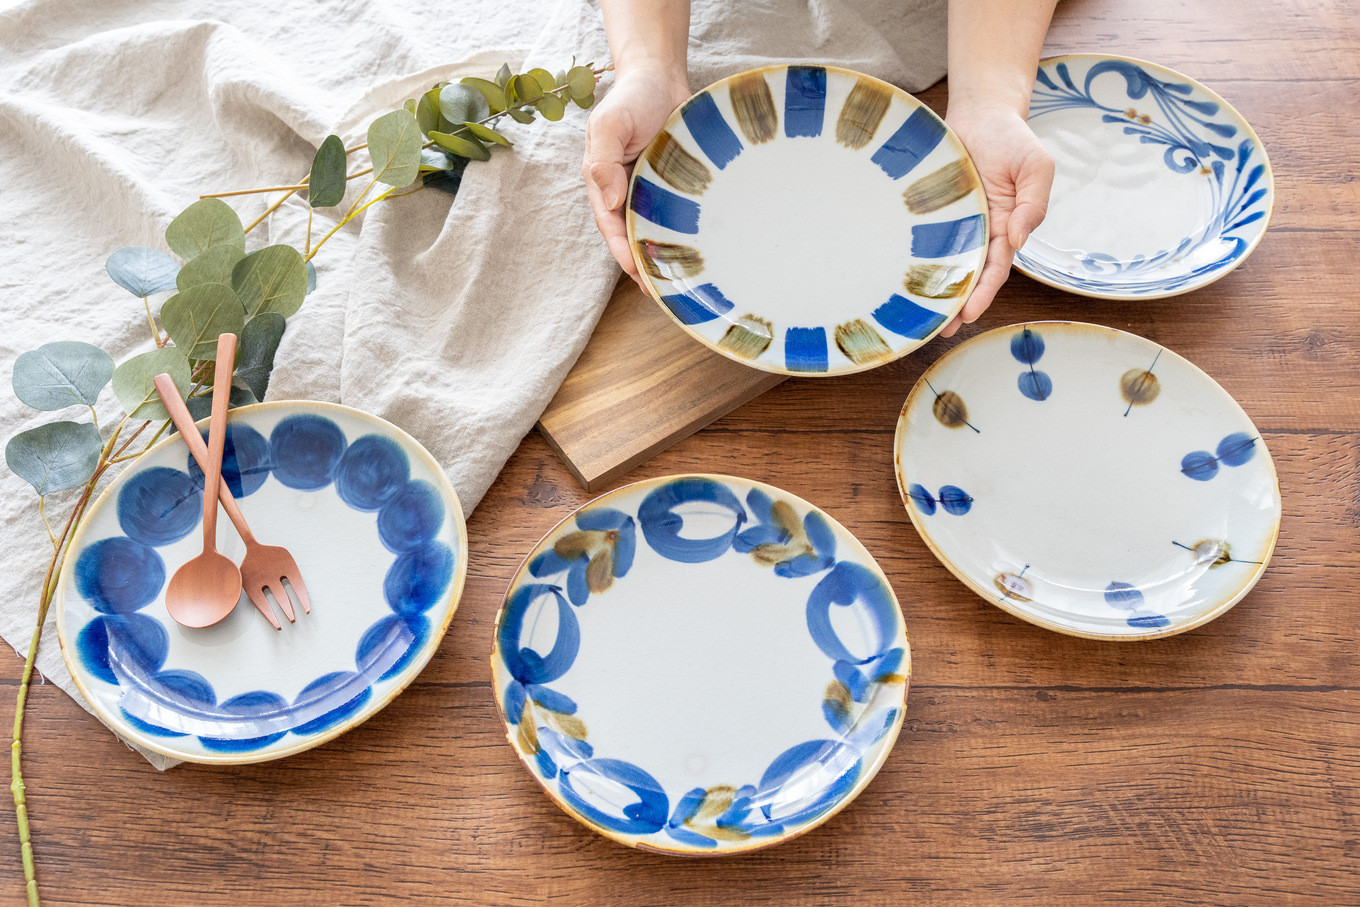 【波佐見焼】藍ブルー 和皿 プレート 7寸皿 21cm 5枚セット 食器 皿 【藍染窯】 [JC85]